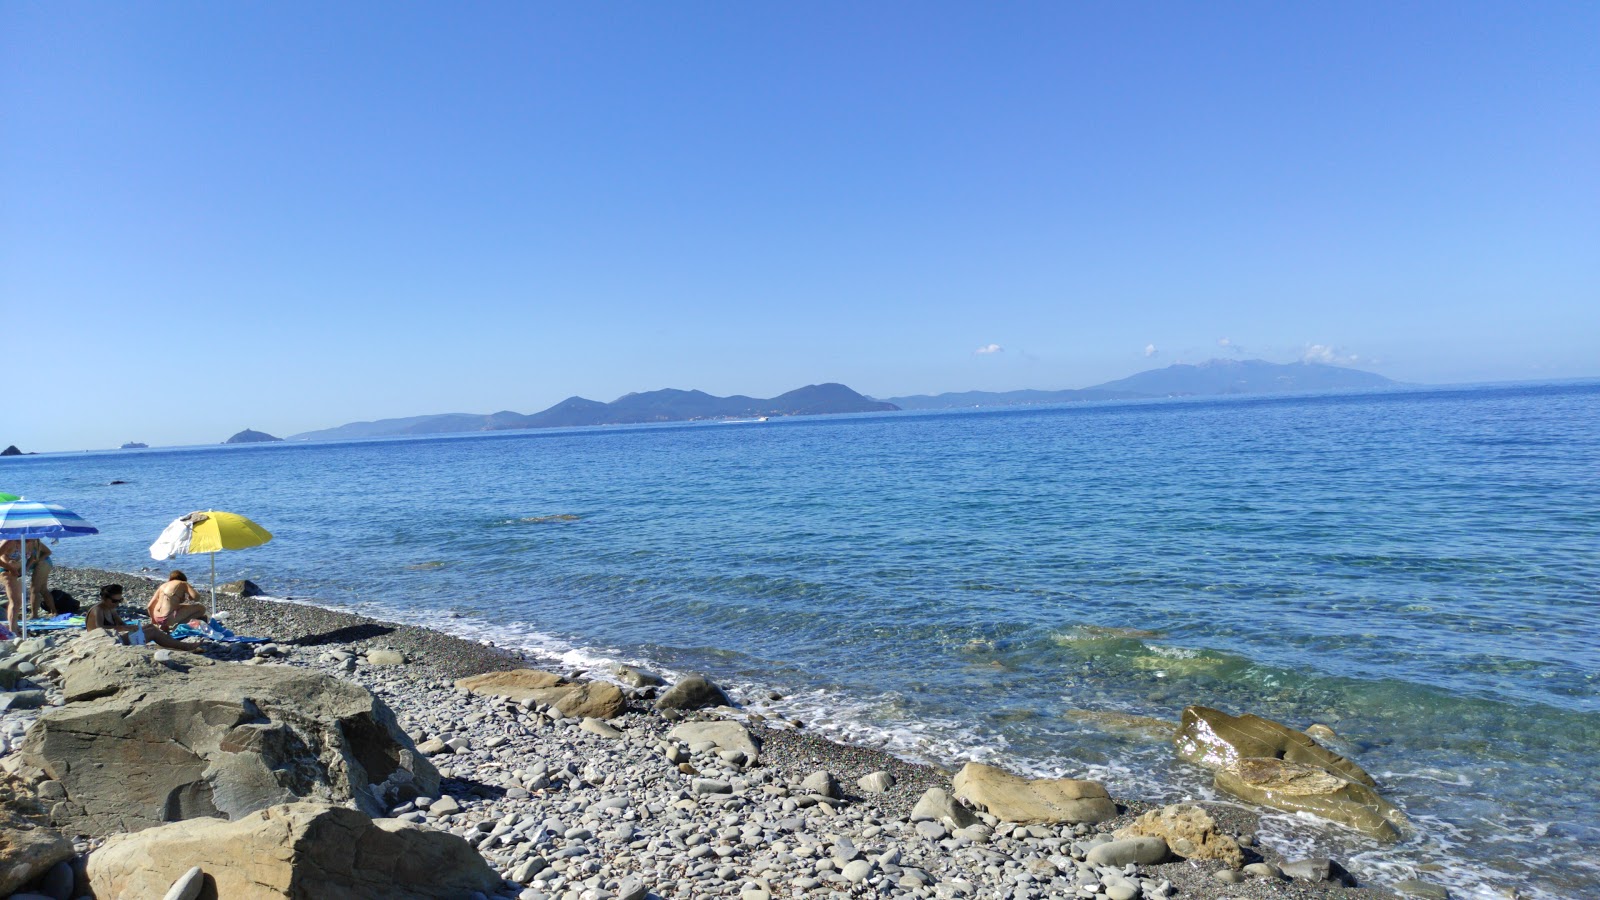 Zdjęcie Spiaggia lunga z powierzchnią niebieska woda